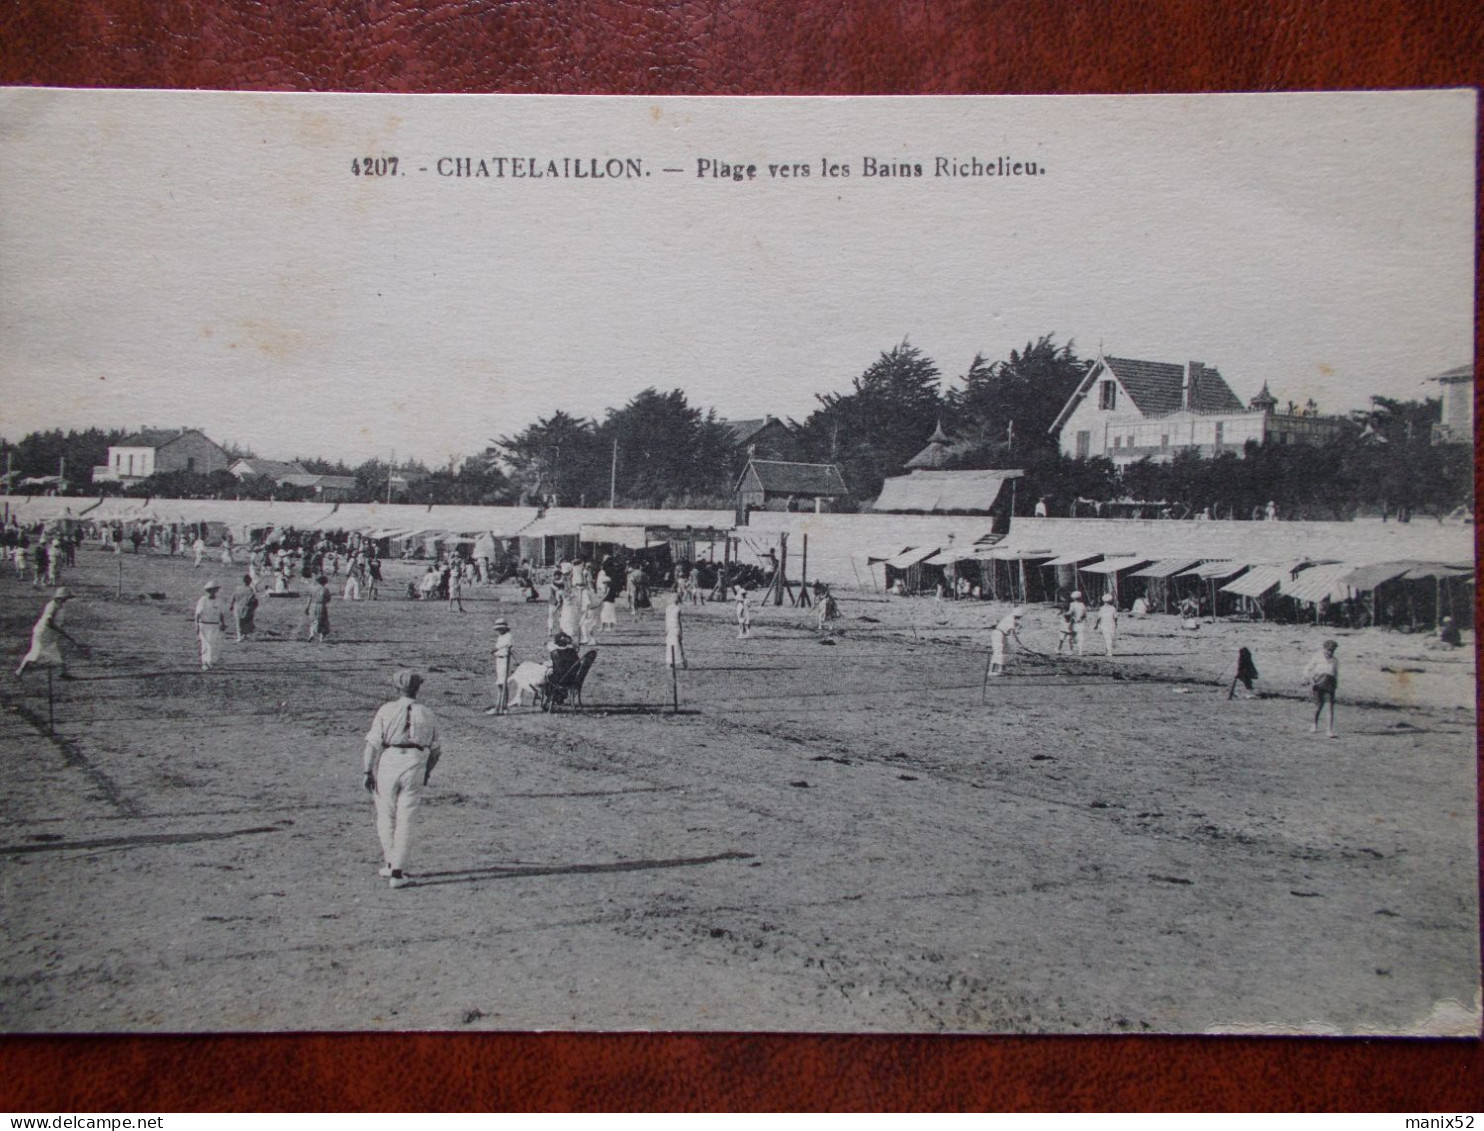 17 - CHATELAILLON - Plage Vers Les Bains Richelieu. (Parties De Tennis Sur La Plage) - Châtelaillon-Plage